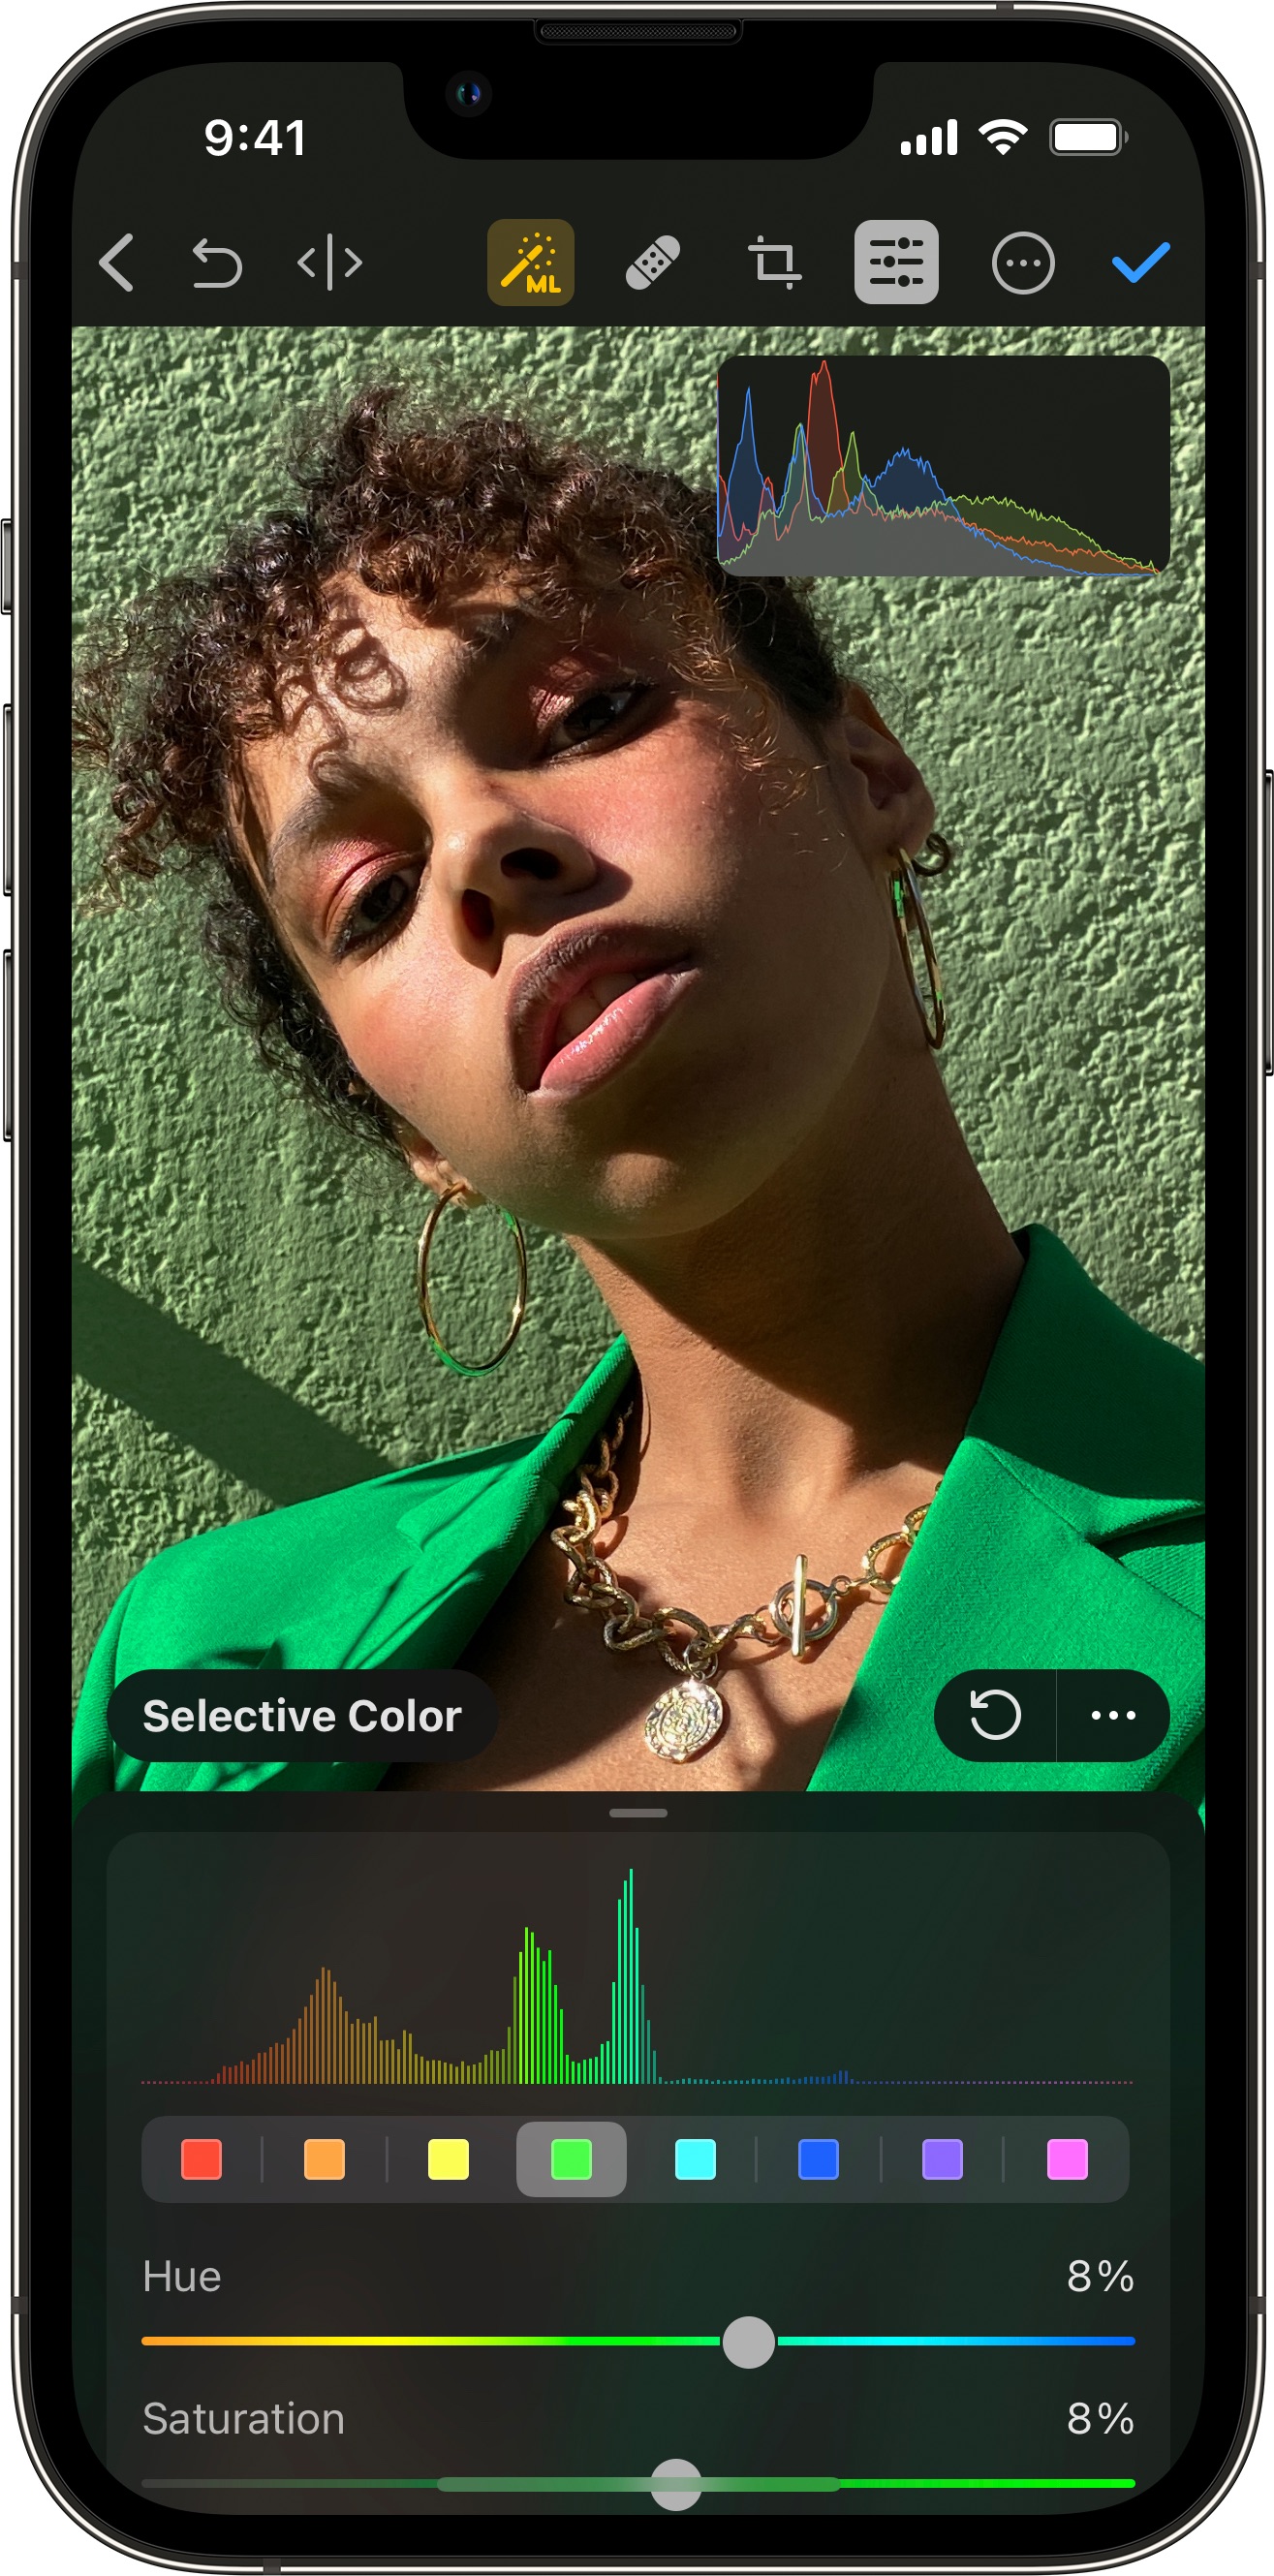 Marketing image showing Pixelmator Photo on iPhone